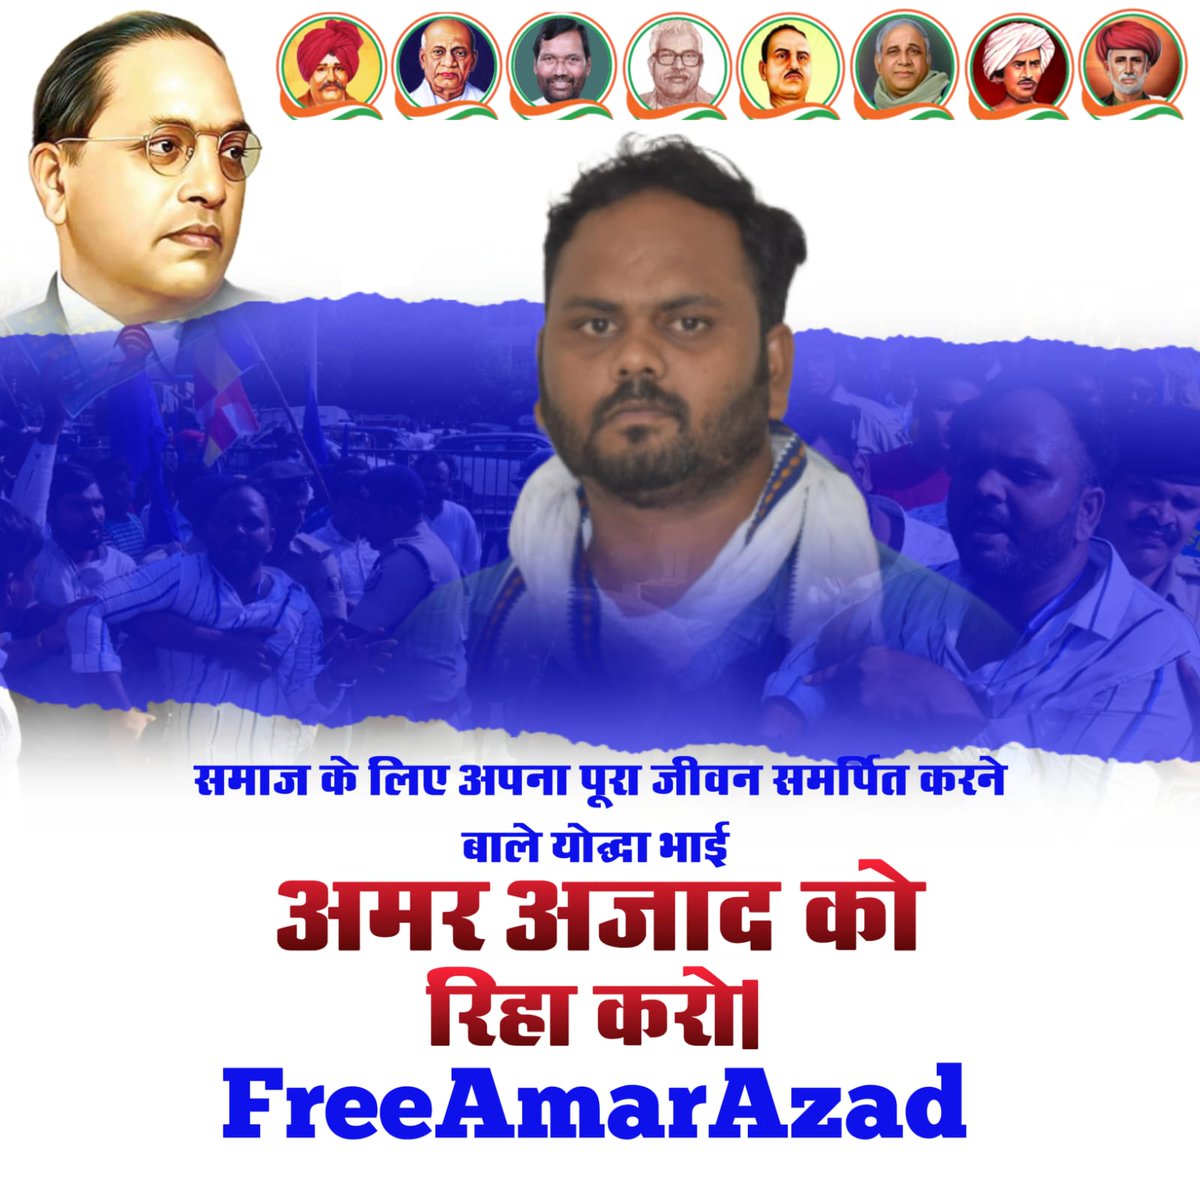 पूरे बिहार में सिर्फ दलितों पे अत्याचार हो रहा है और बिहार सरकार को दिखाई नहीं दे रहा है और न्याय के लिए आंदोलन करो तो जेल सिर्फ जेल भेजती है।बड़े भाई अमर आज़ाद को रिहा करो नहीं तो अंजाम बहुत बुरा होगा @yadavtejashwiजी #FreeAmarAzad